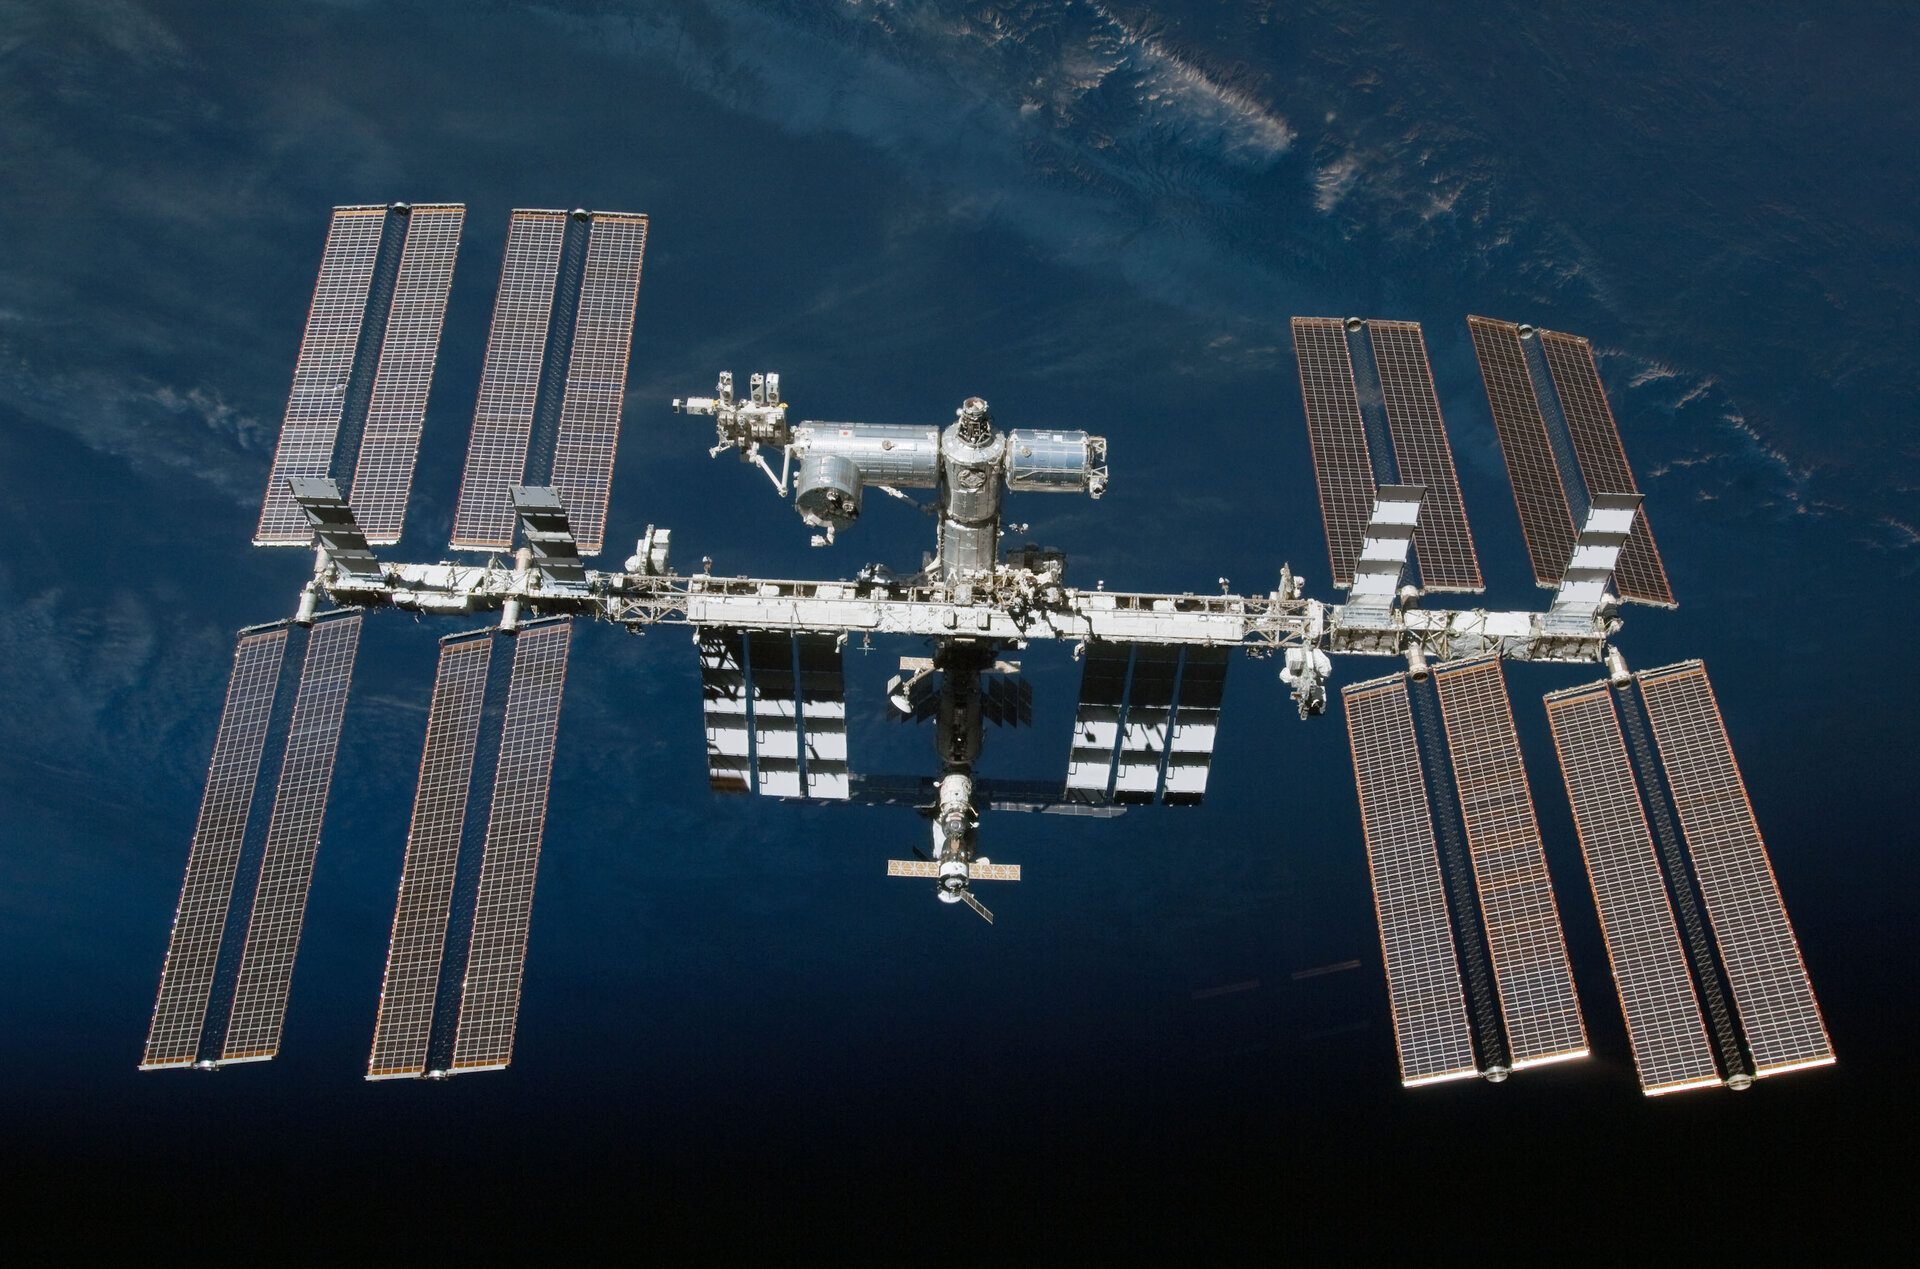 Compania SpaceX a lui Musk a fost angajată pentru a distruge stația spațială ISS. Când va fi scoasă de pe orbită